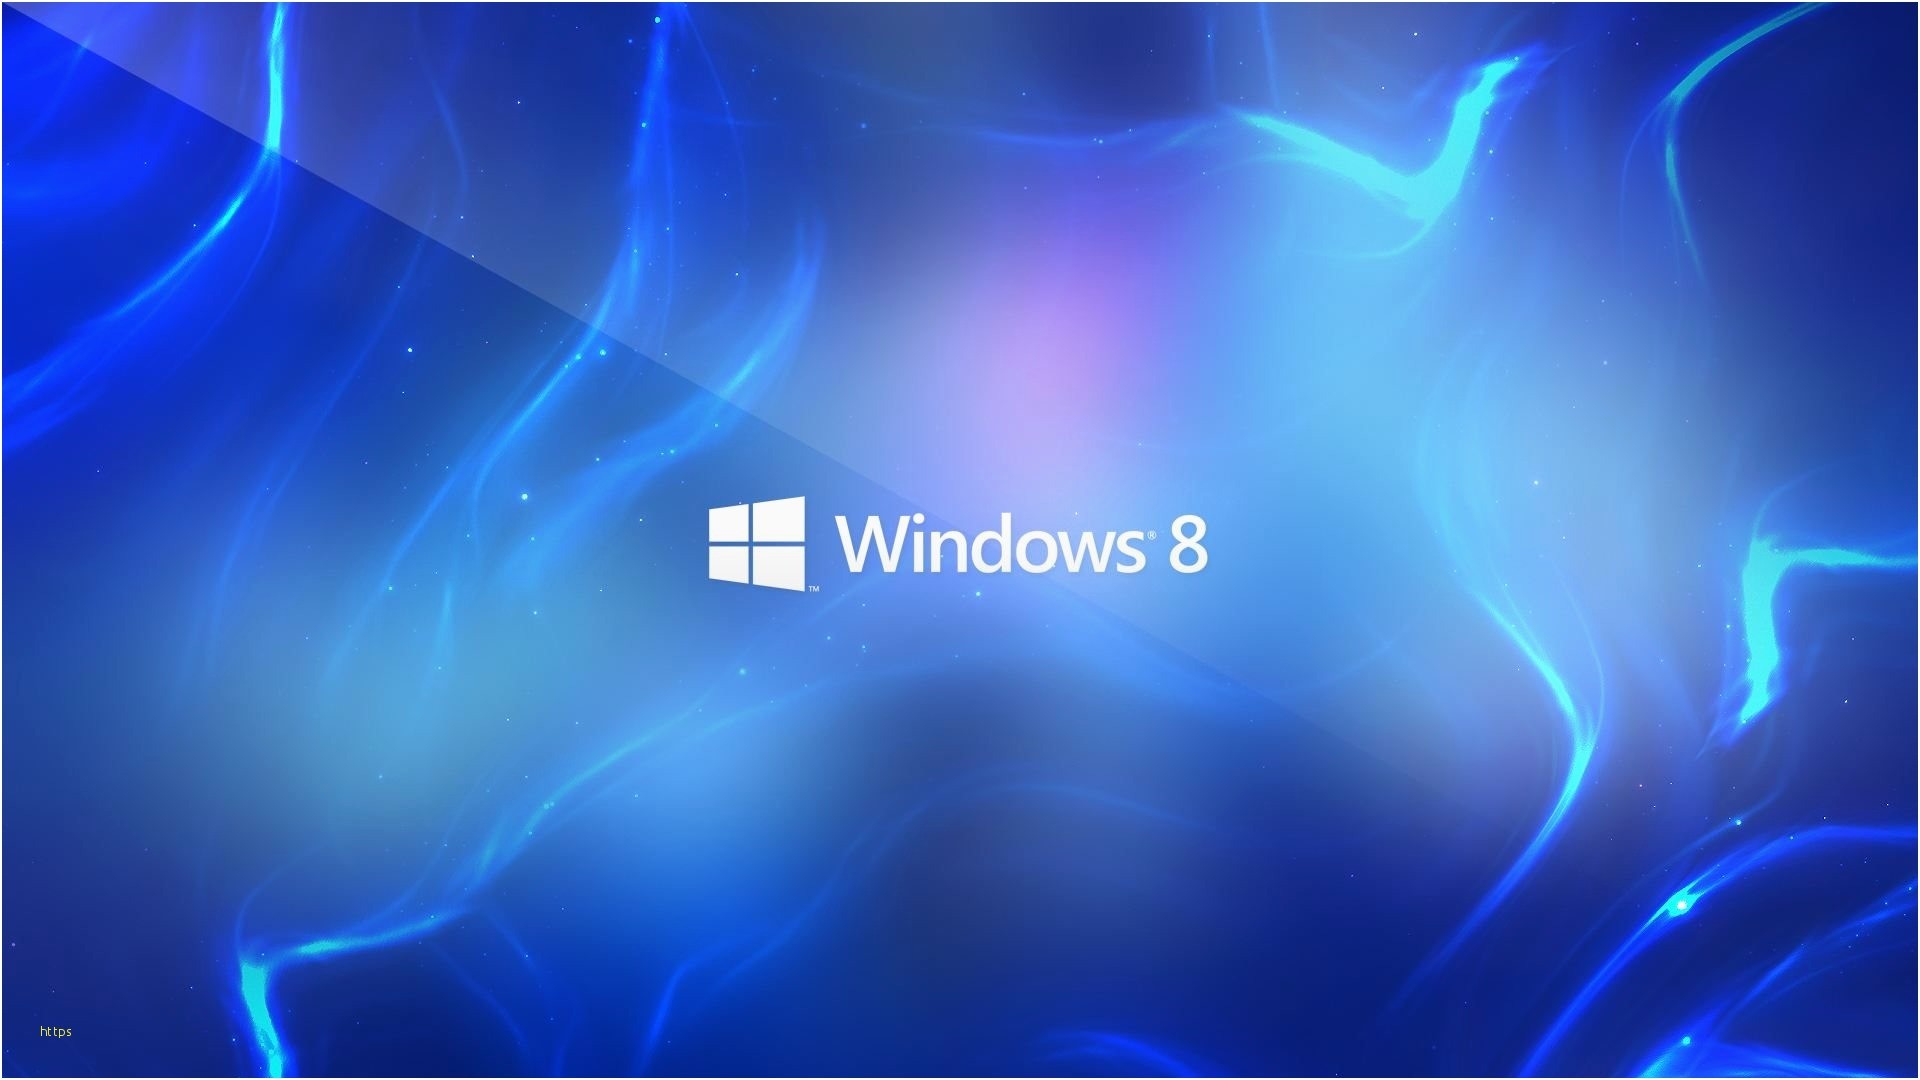 1920x1080 ... Windows 8 Wallpaper Fresh Windows 8 Widescreen Hd Wallpapers ...